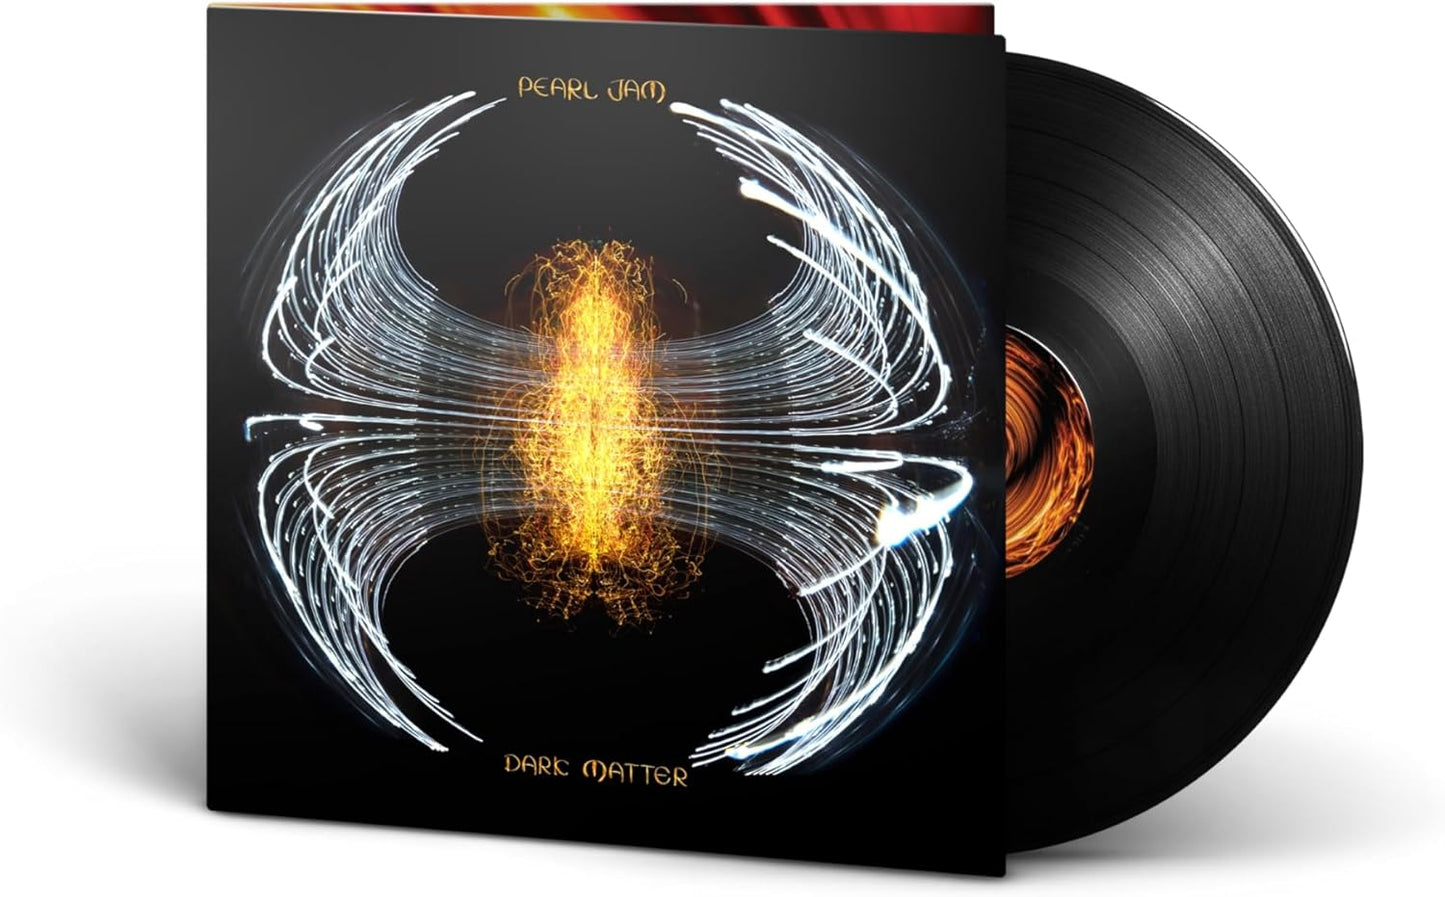 LP - Pearl Jam - Dark Matter